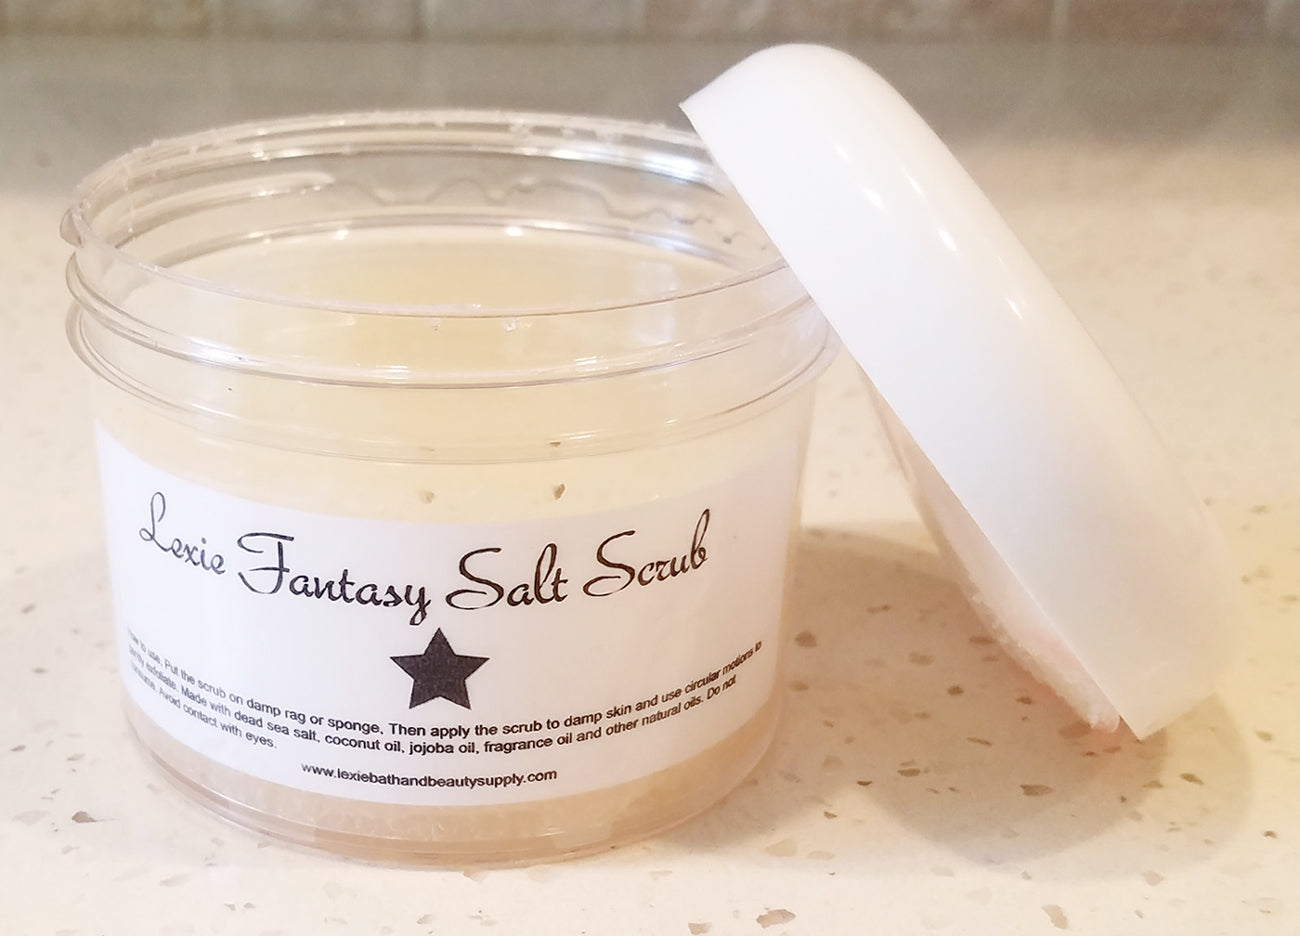 Lexie Fantasy Salt Scrub - Lexie Bath and Beauty Supply